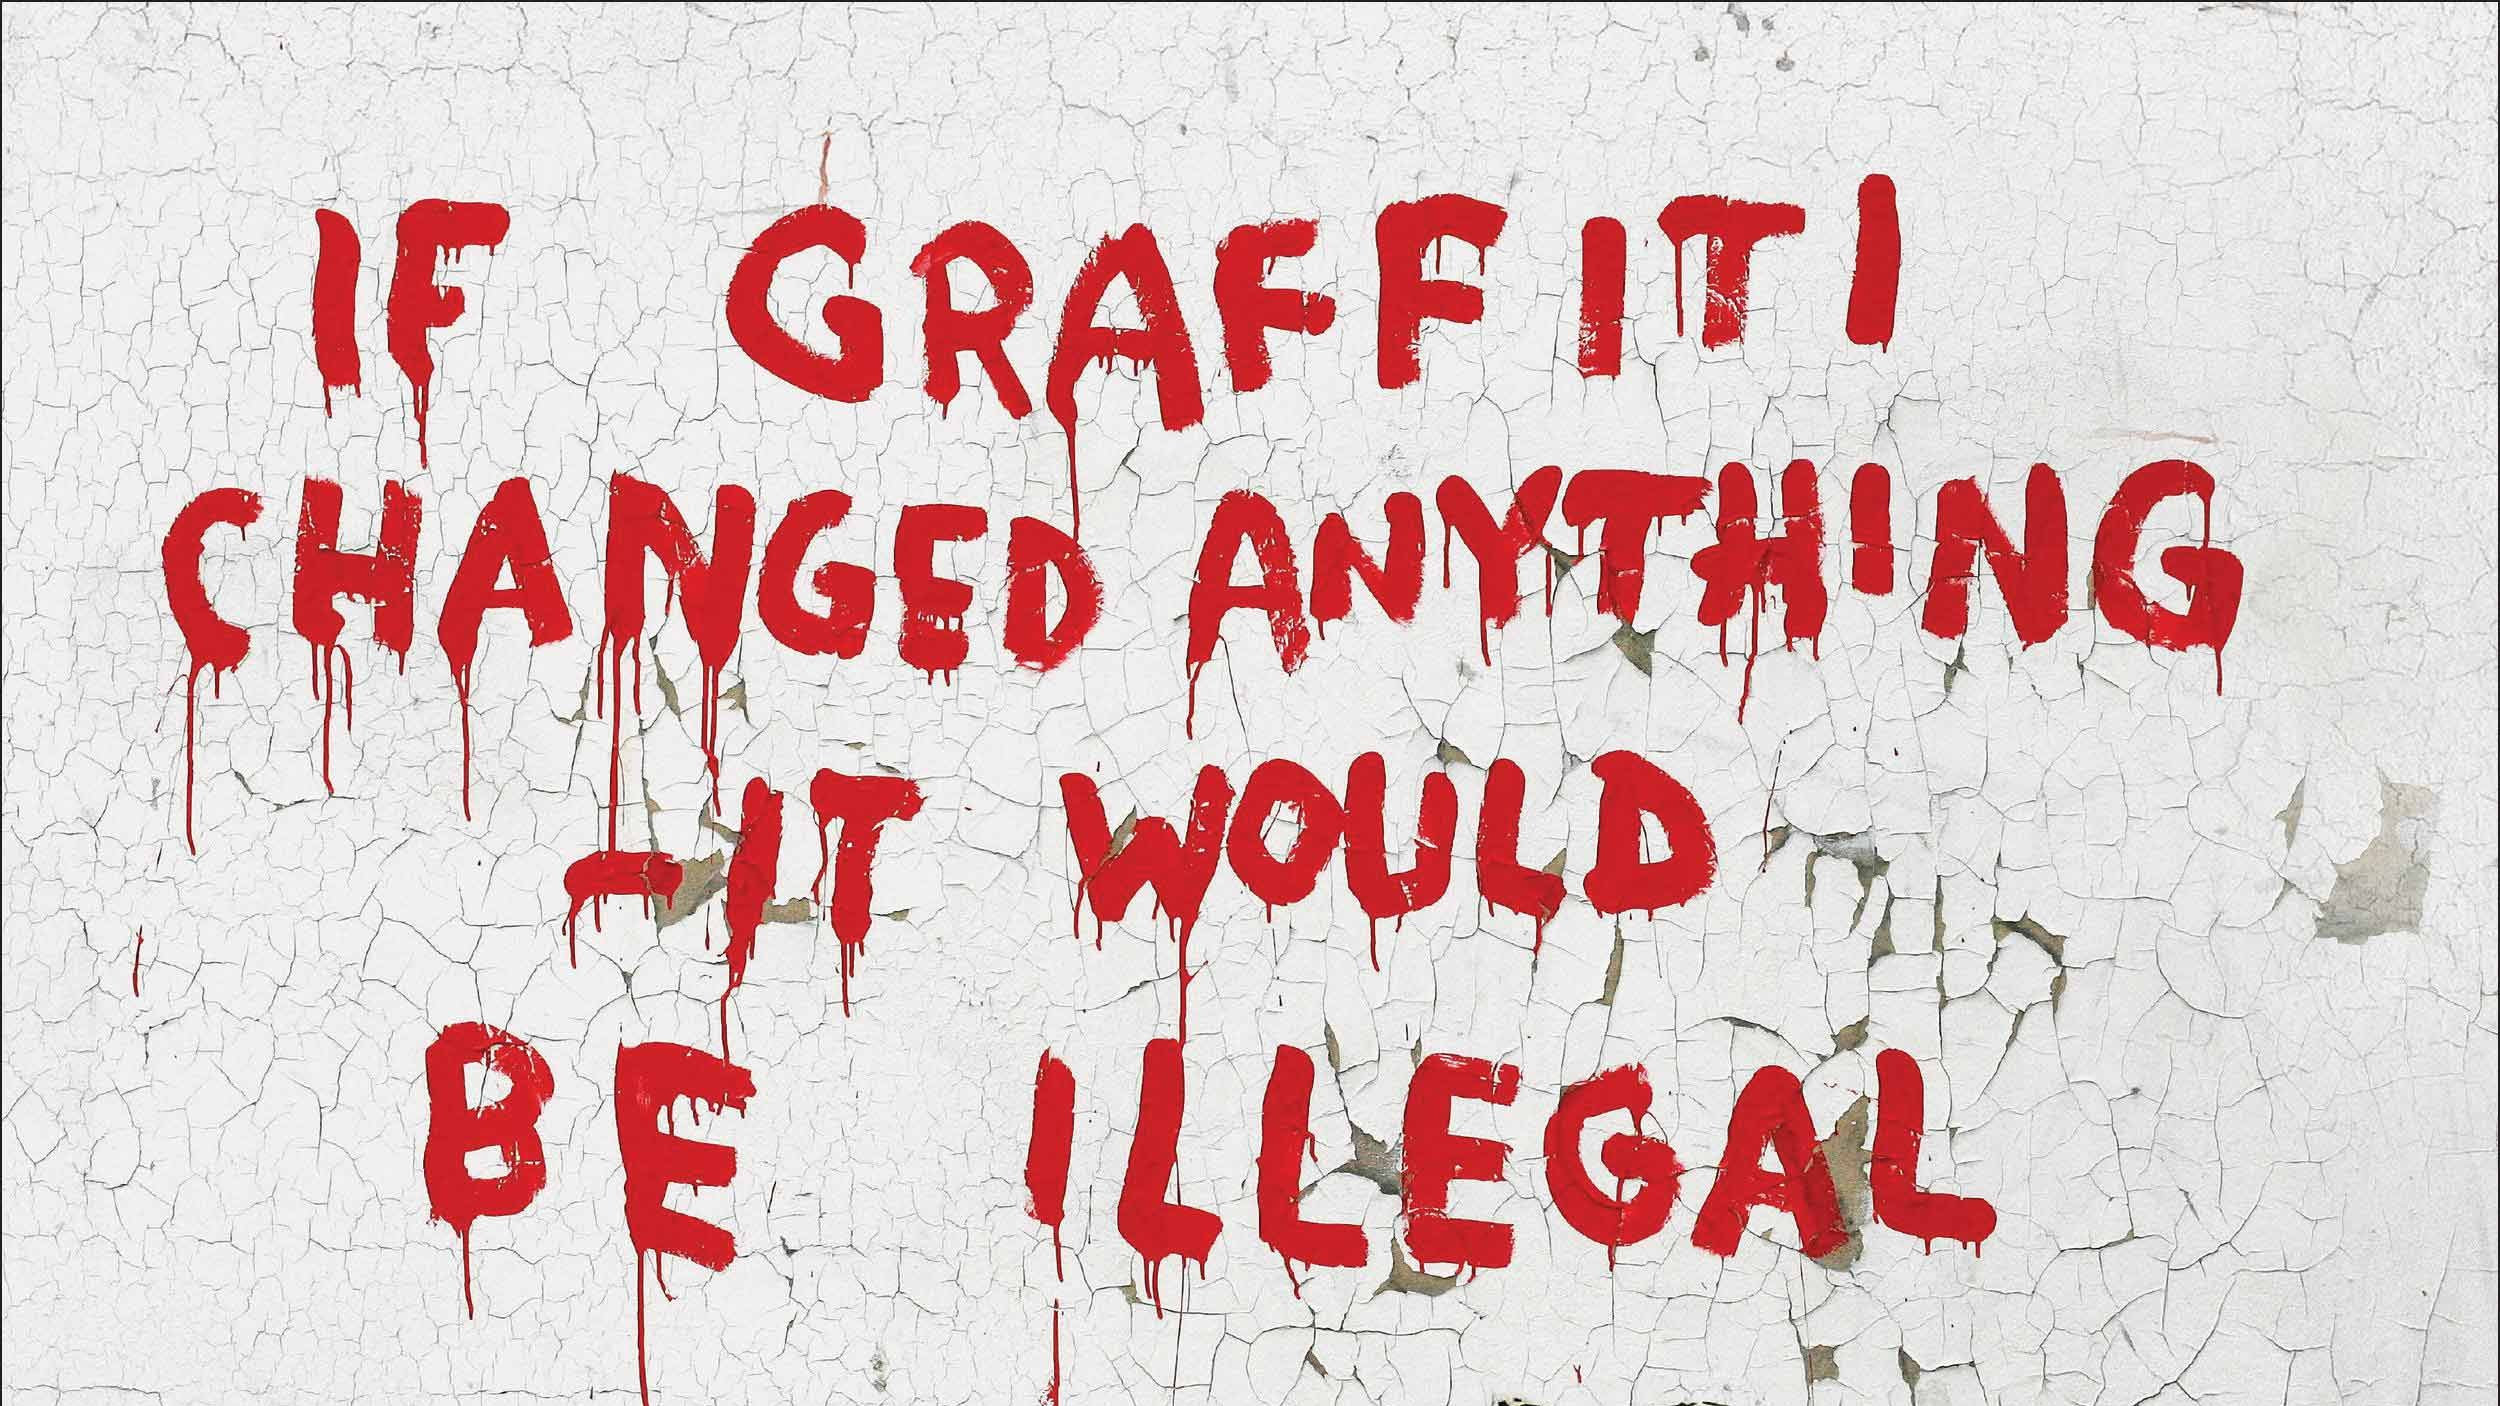 Popular obra del artista callejero Banksy